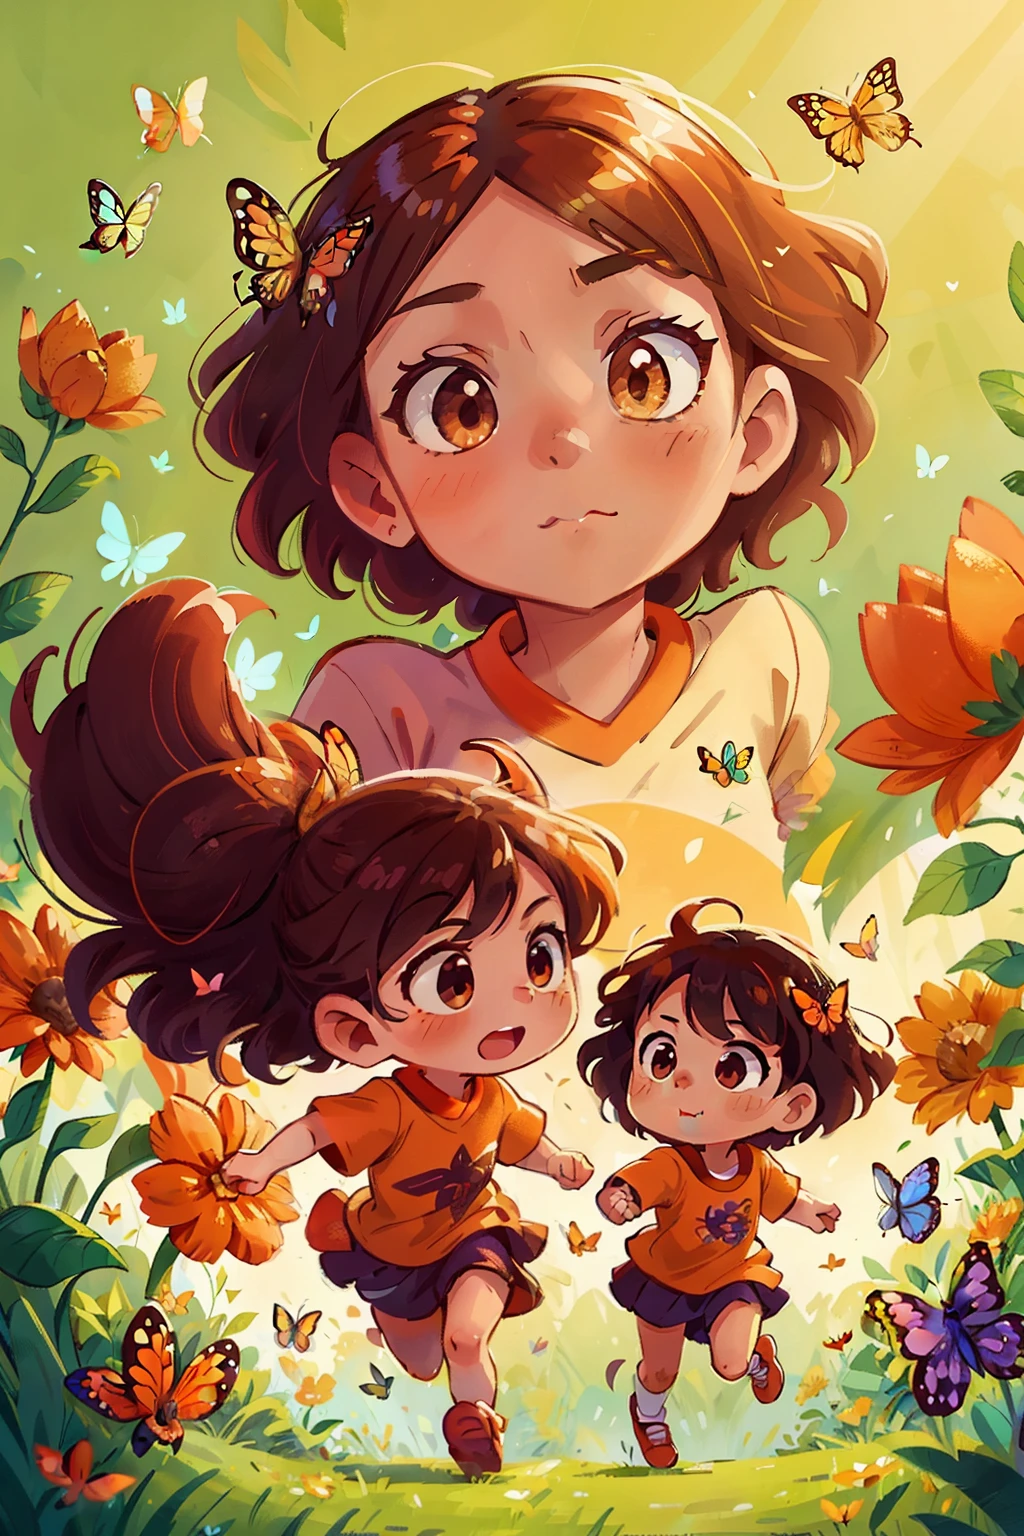 Erzeugt ein Bild von zwei sehr jungen Mädchen, die glücklich in einem Blumenfeld laufen, umgeben von Schmetterlingen in verschiedenen Farbtönen, Zartes, schönes Gesicht mit verführerischen orangefarbenen Augen, scharf , Sicht von oben